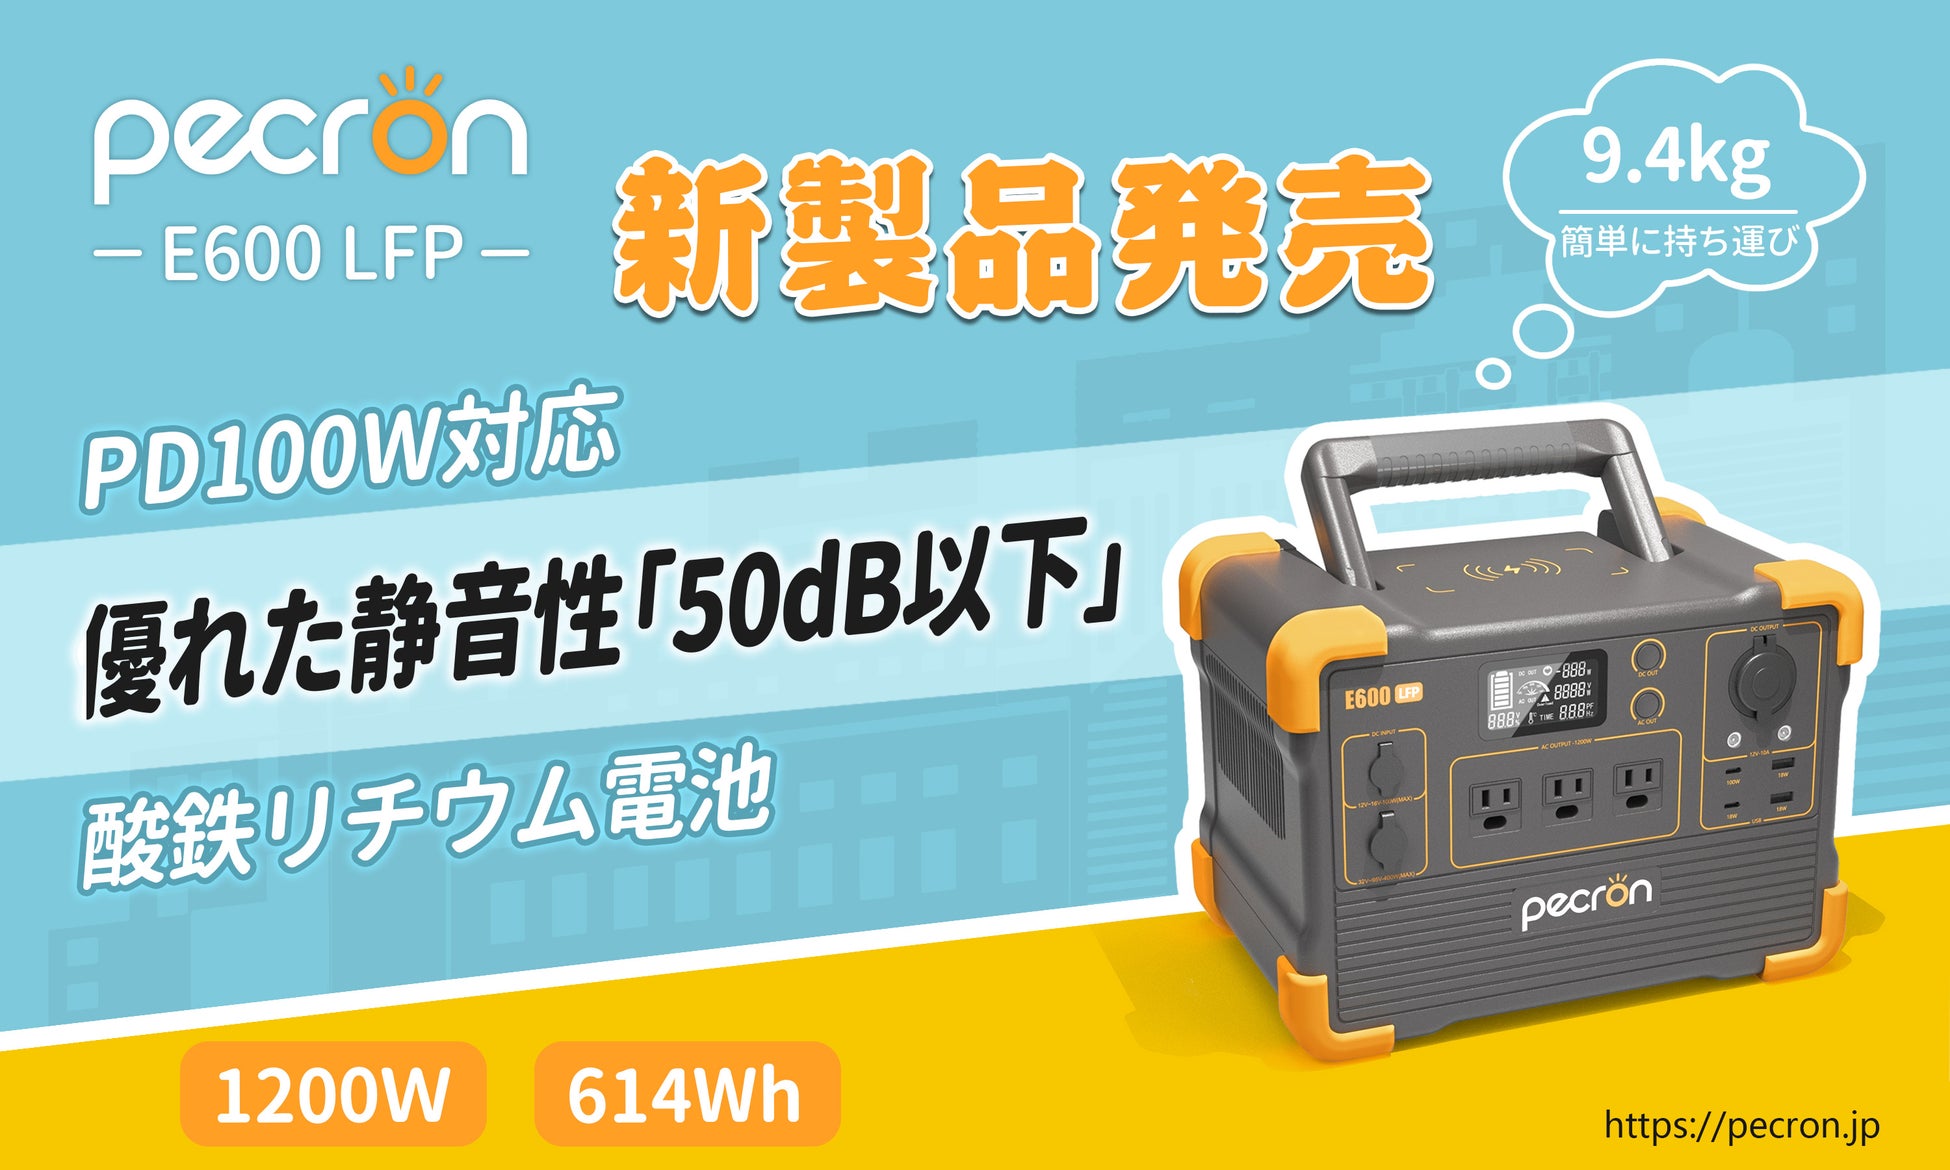 【Pecron新製品】リン酸鉄リチウムイオン電池を搭載した1200Ｗ小型ポータブル電源「Pecron E600LFP」が12月6日（火）から発売のサブ画像1